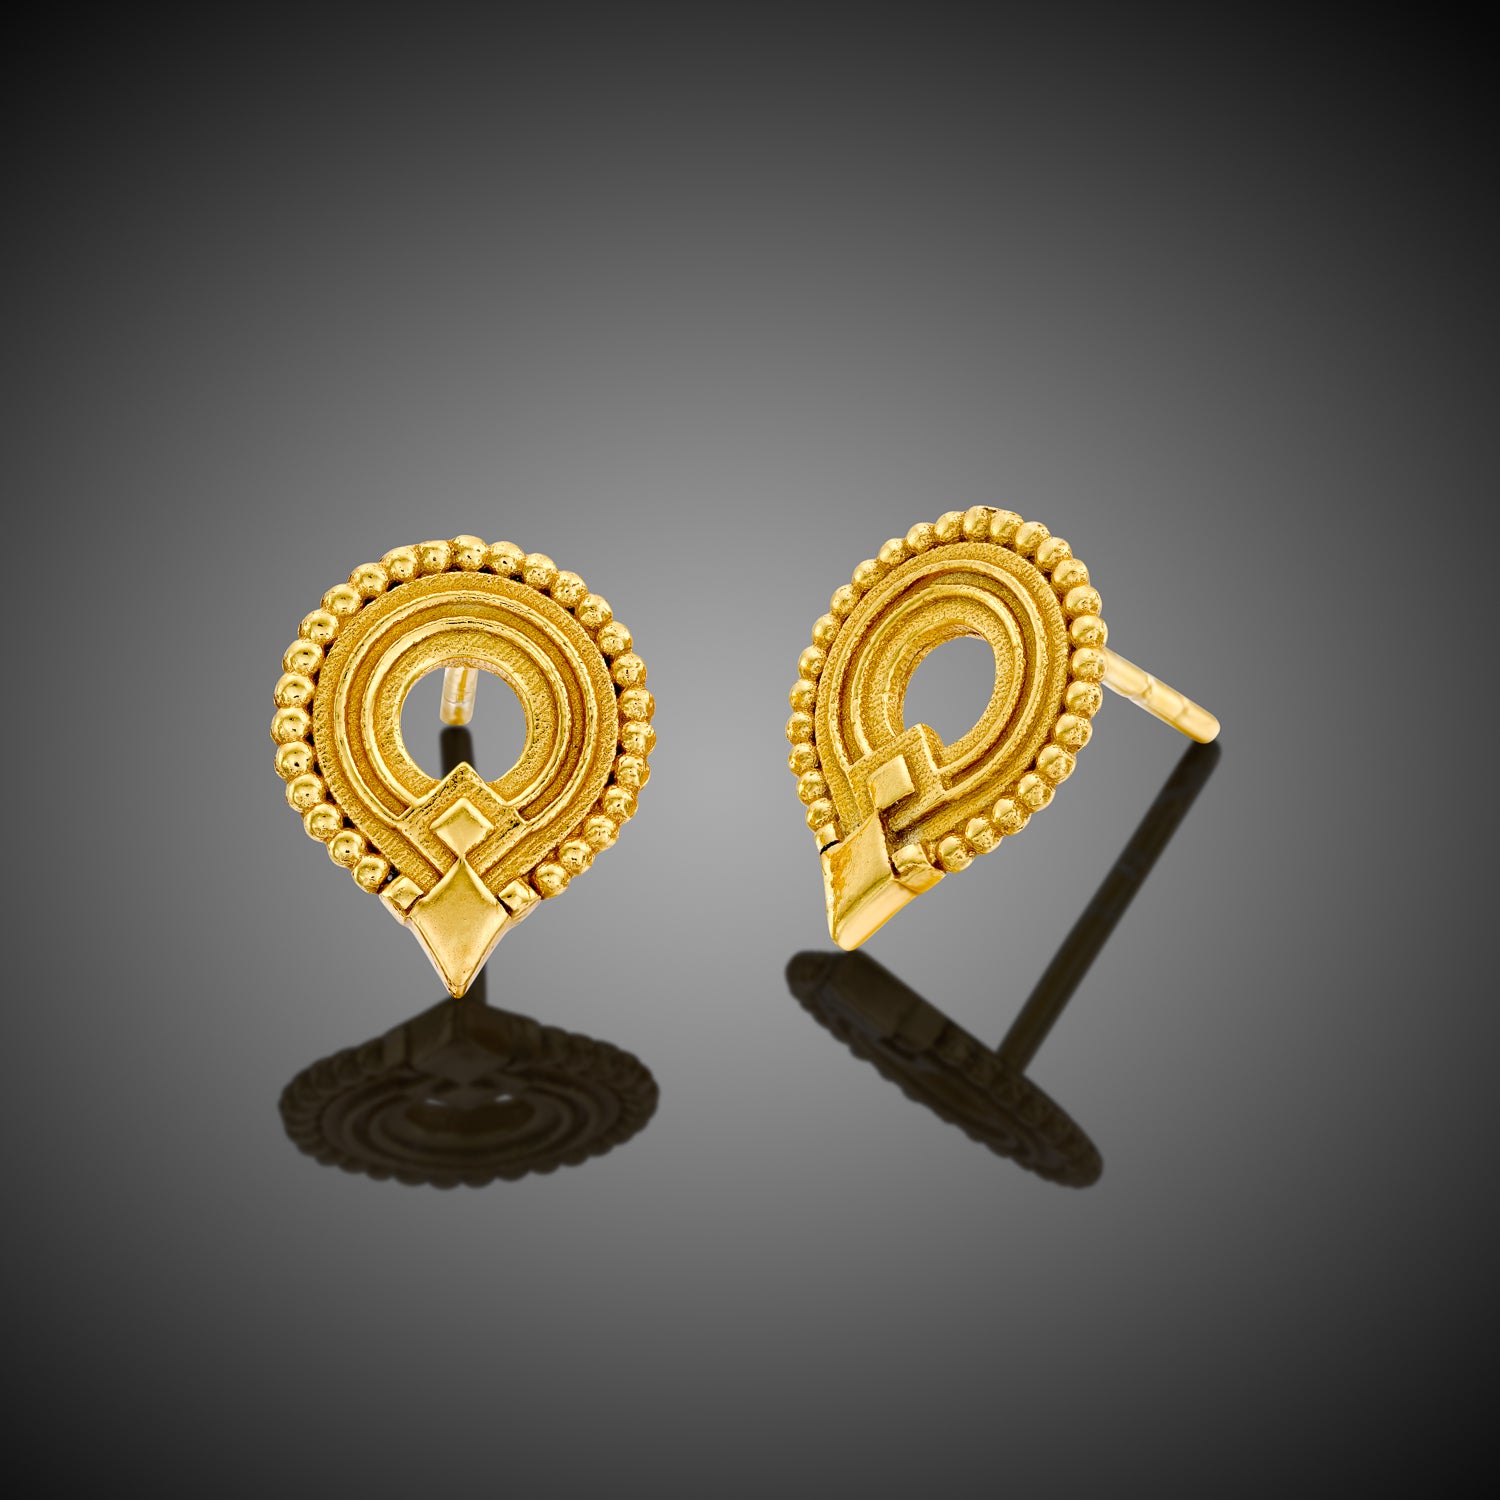 Kalahari tribal earrings